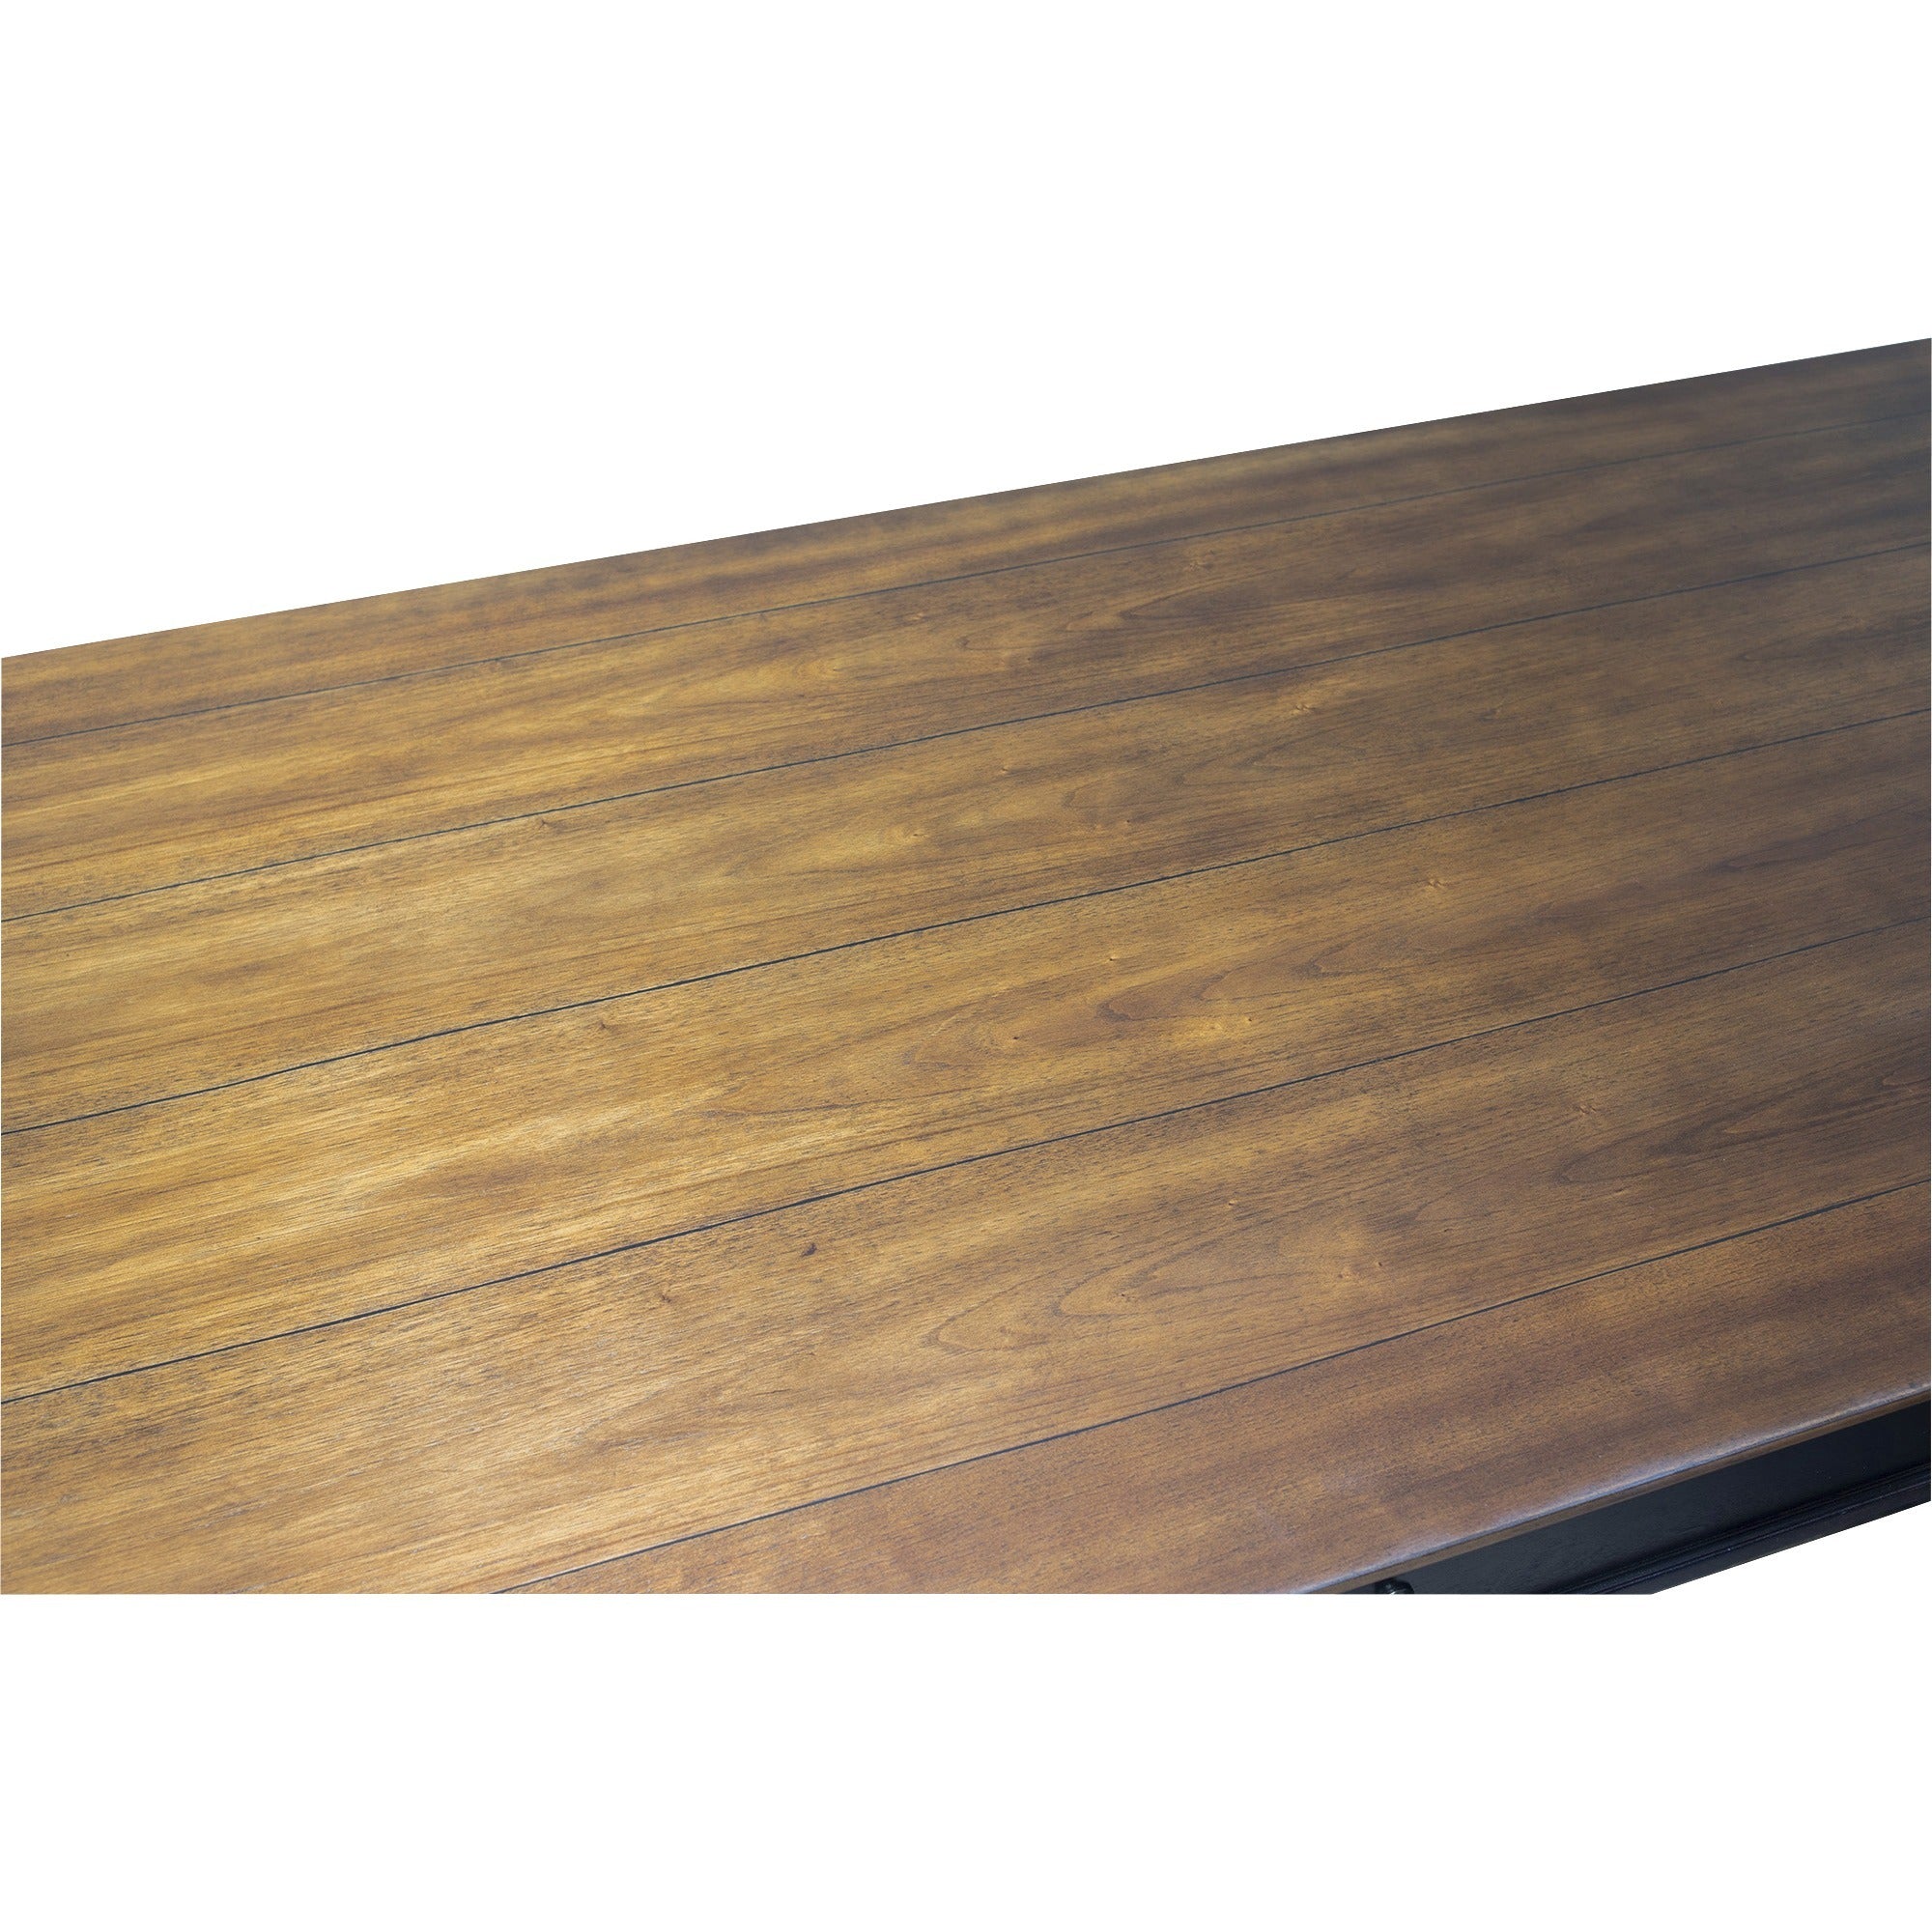 martin-hartford-l-shaped-desk-vintage-black-1-each_mrtimhf684rrr - 6